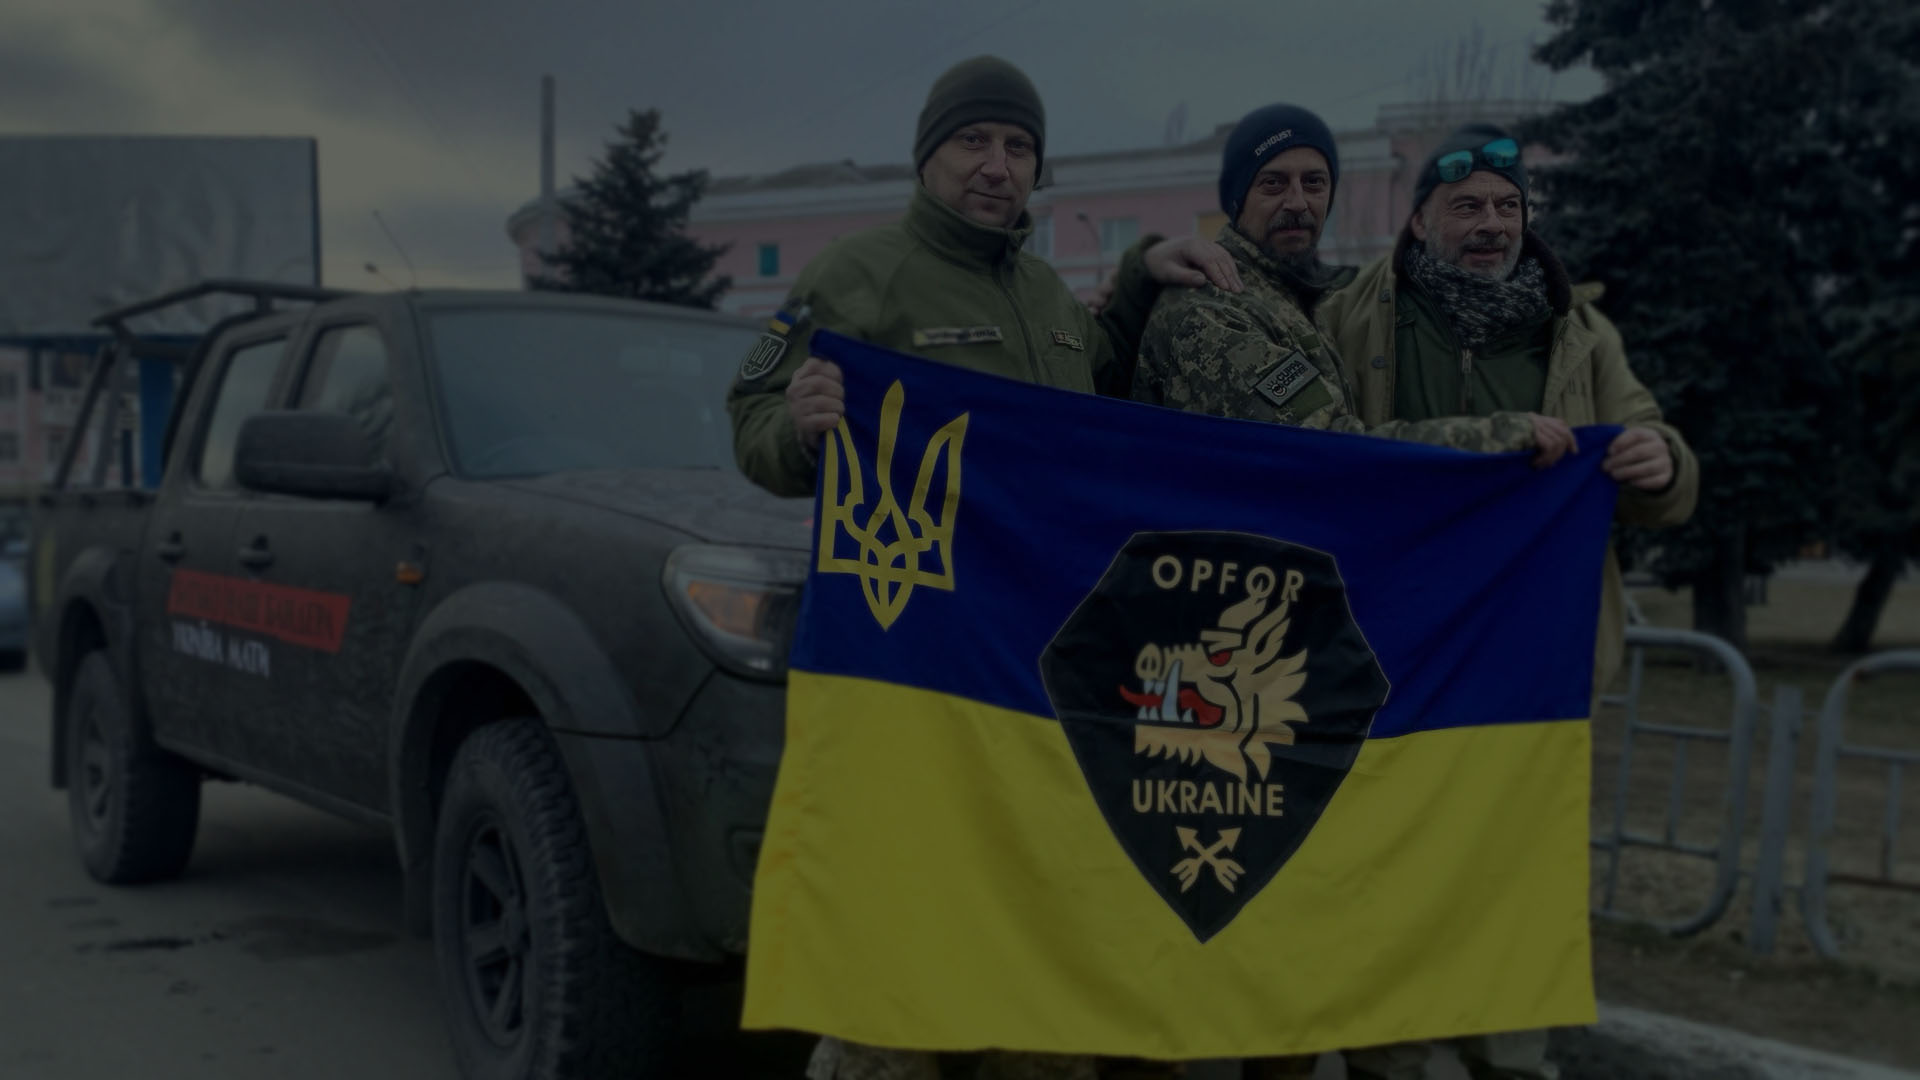 Dwóch żołnierzy UA z OPFOR i Adam trzymają flagę ukraińską przed zbrojnym samochodem dostawczym.